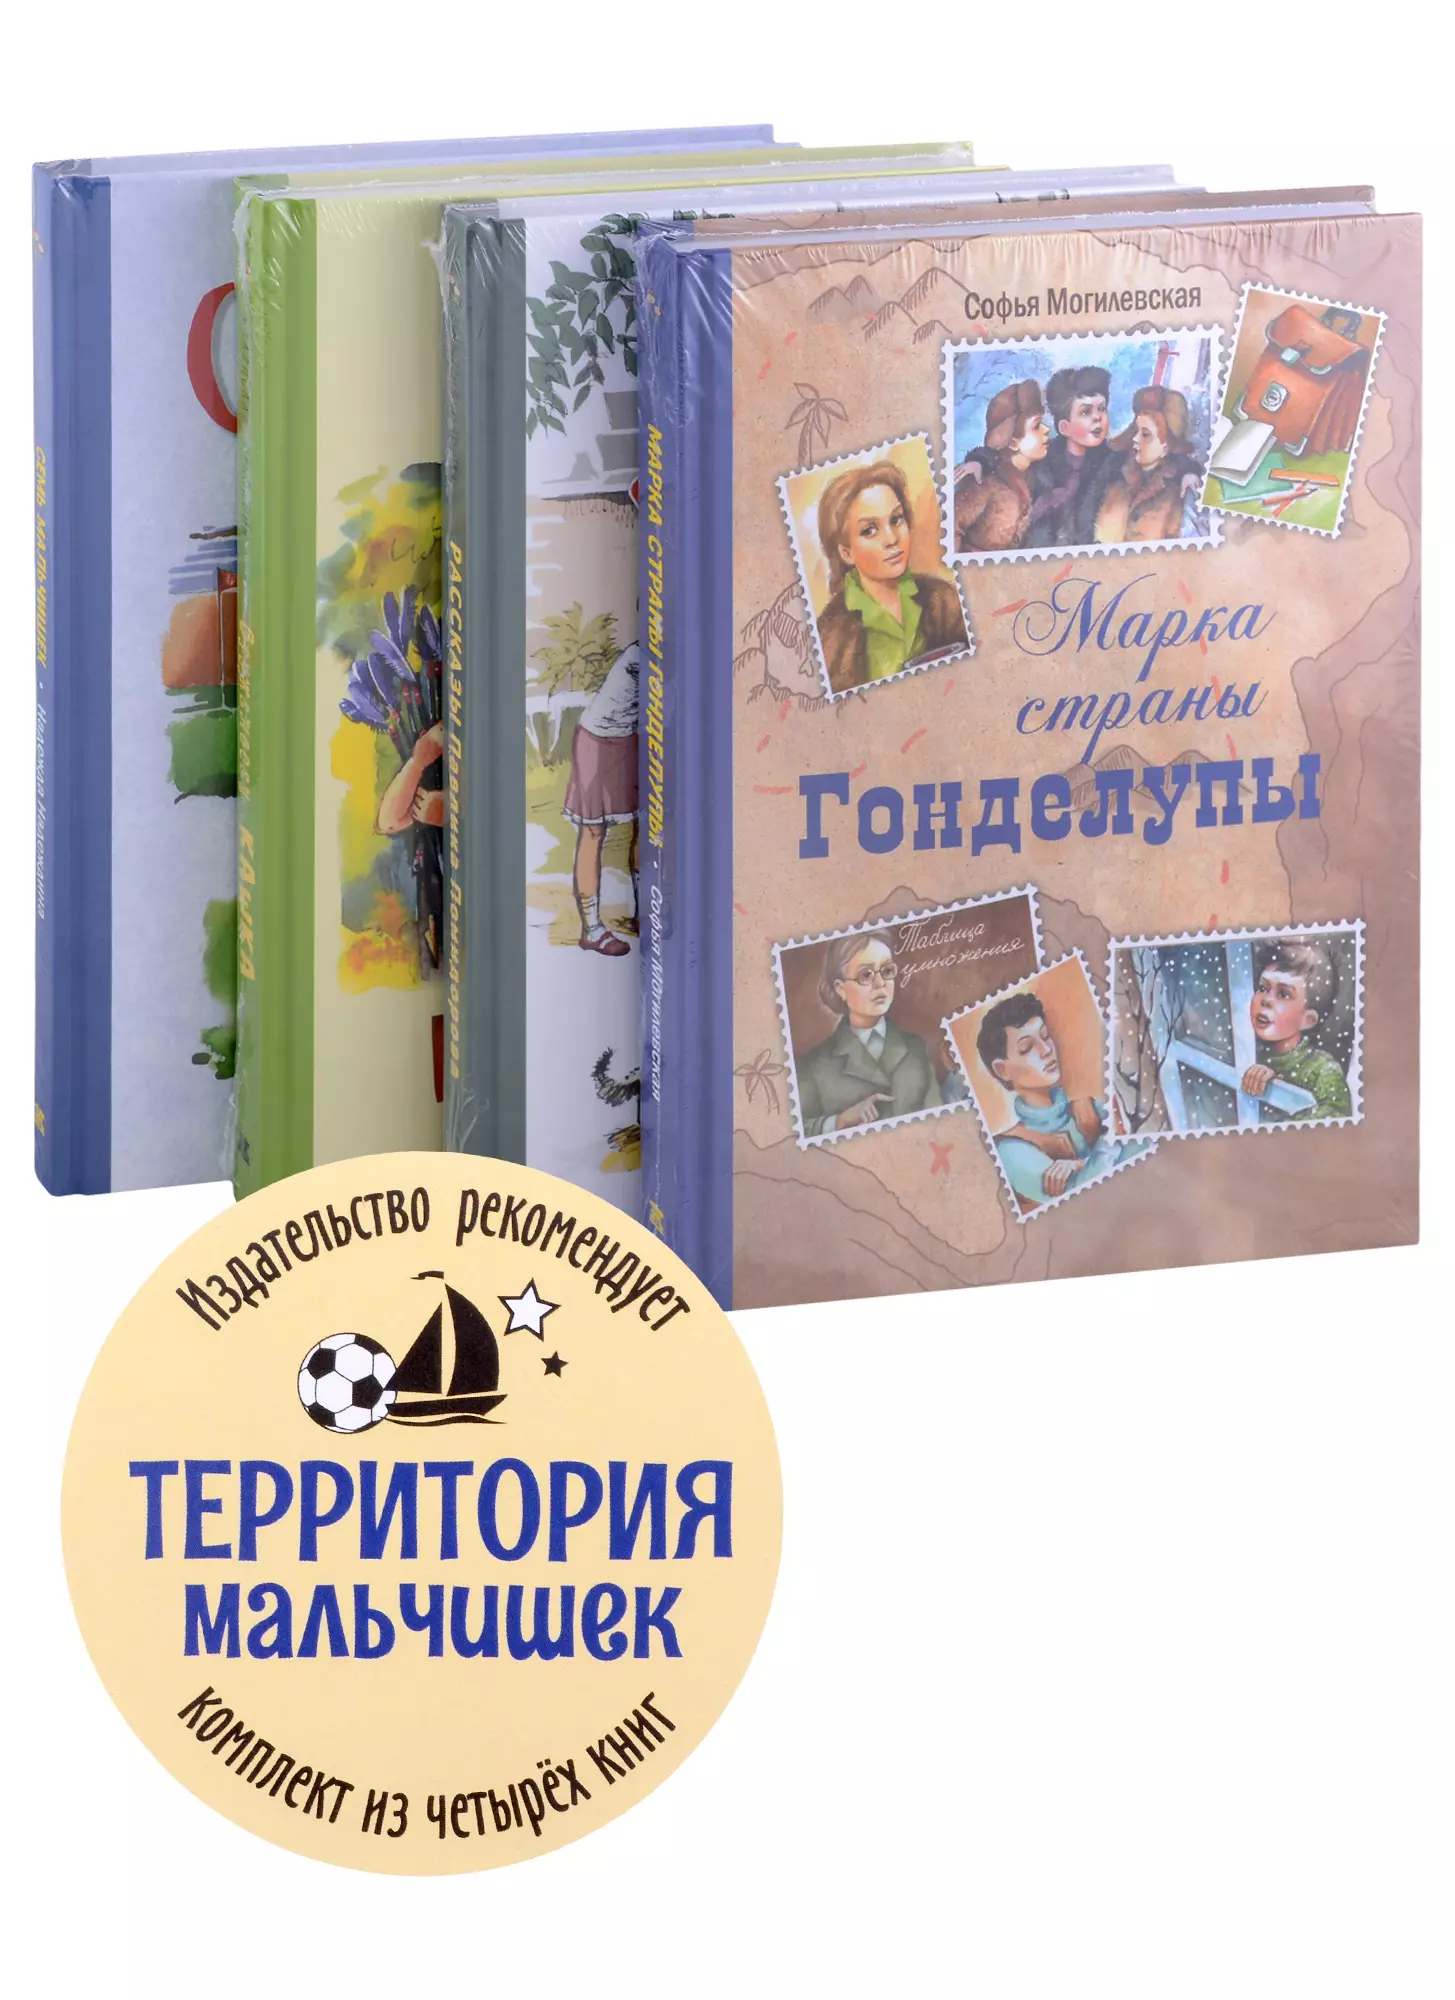 Могилевская Софья Абрамовна - Территория мальчишек (комплект из 4-х книг)